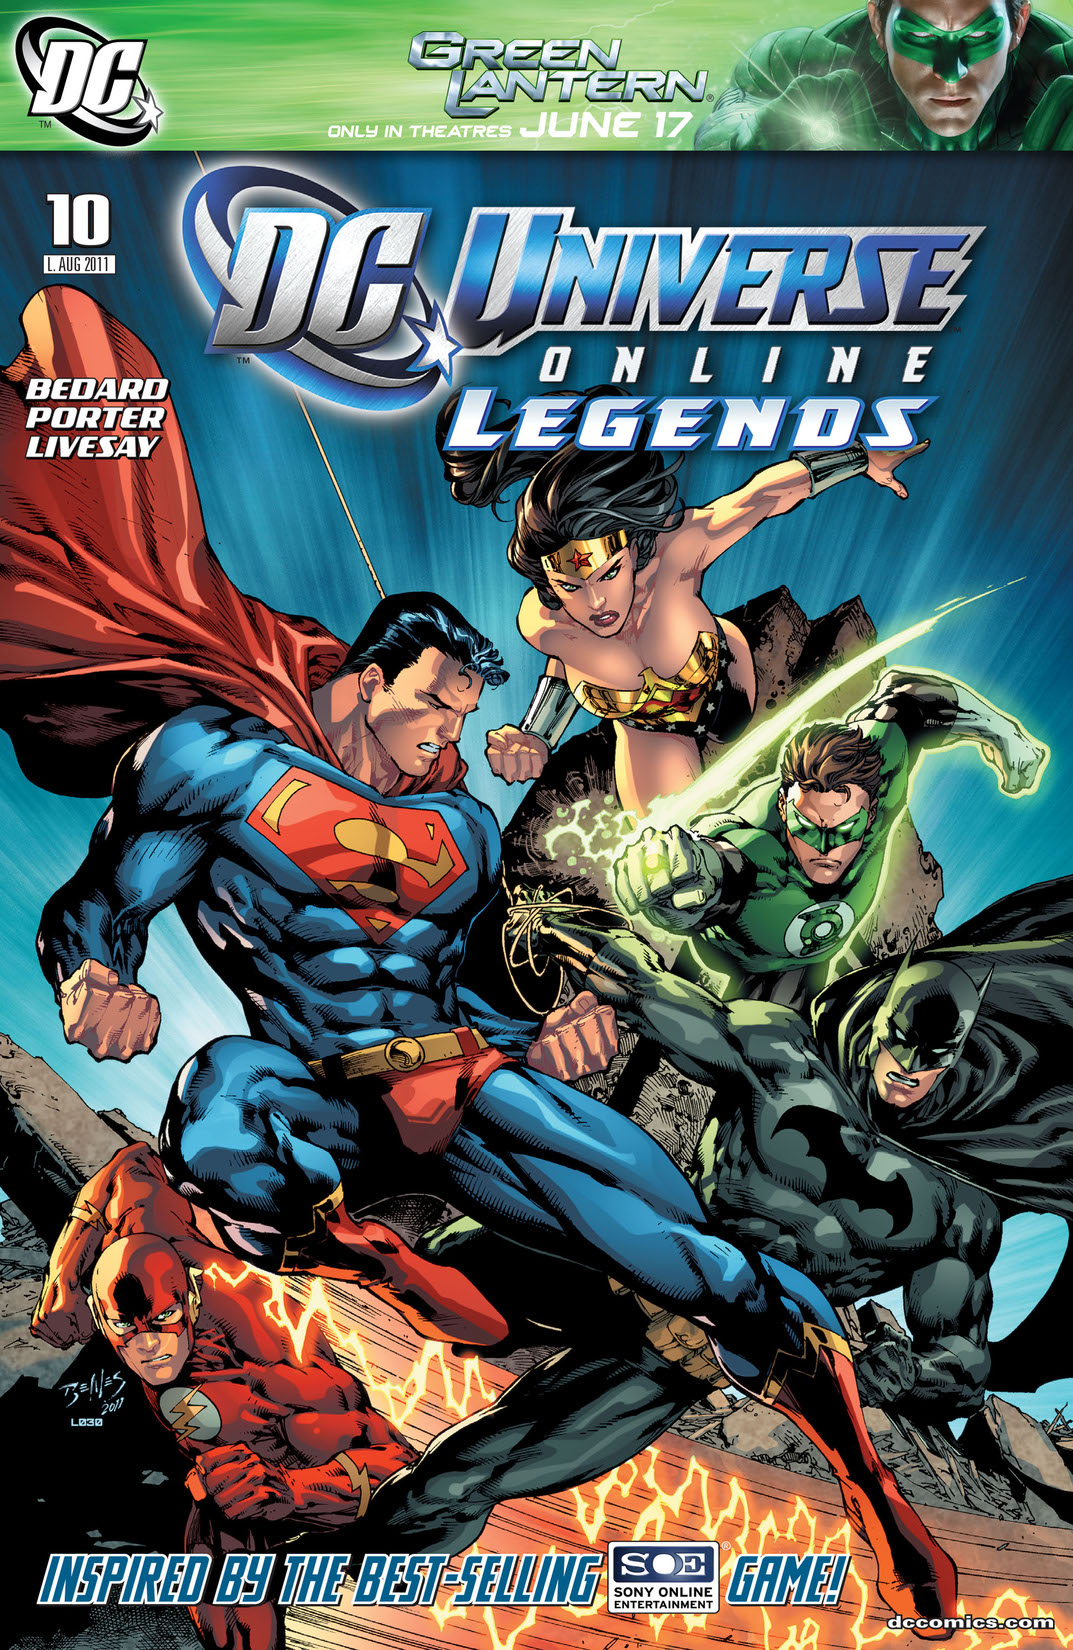 DC Universe Online Legends #10 preview images